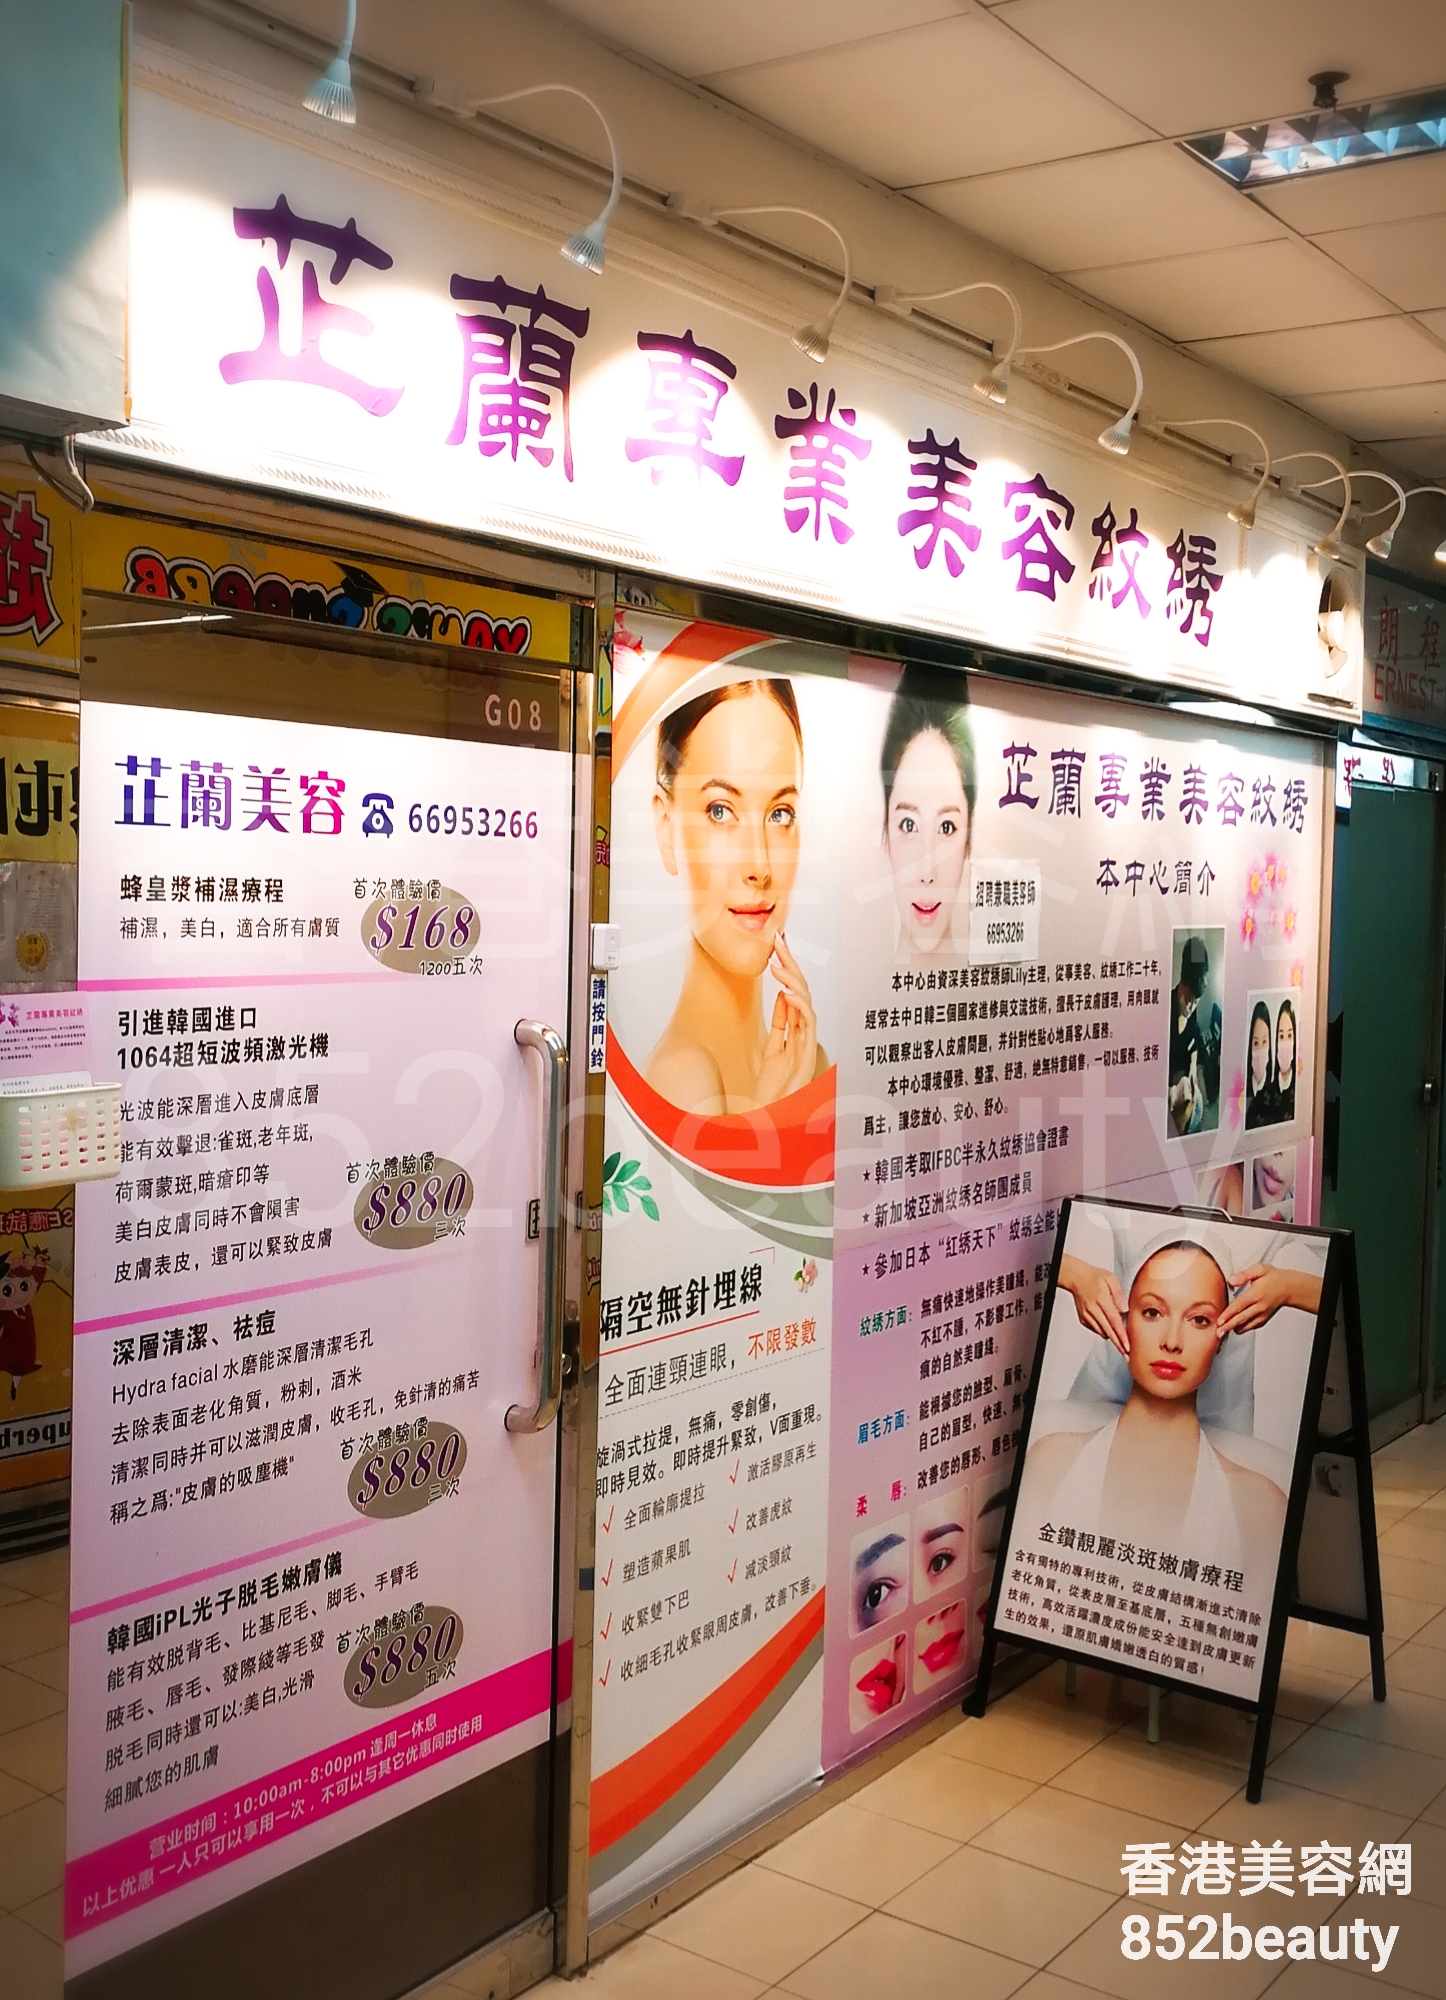 香港美容網 Hong Kong Beauty Salon 美容院 / 美容師: 芷蘭專業美容紋綉